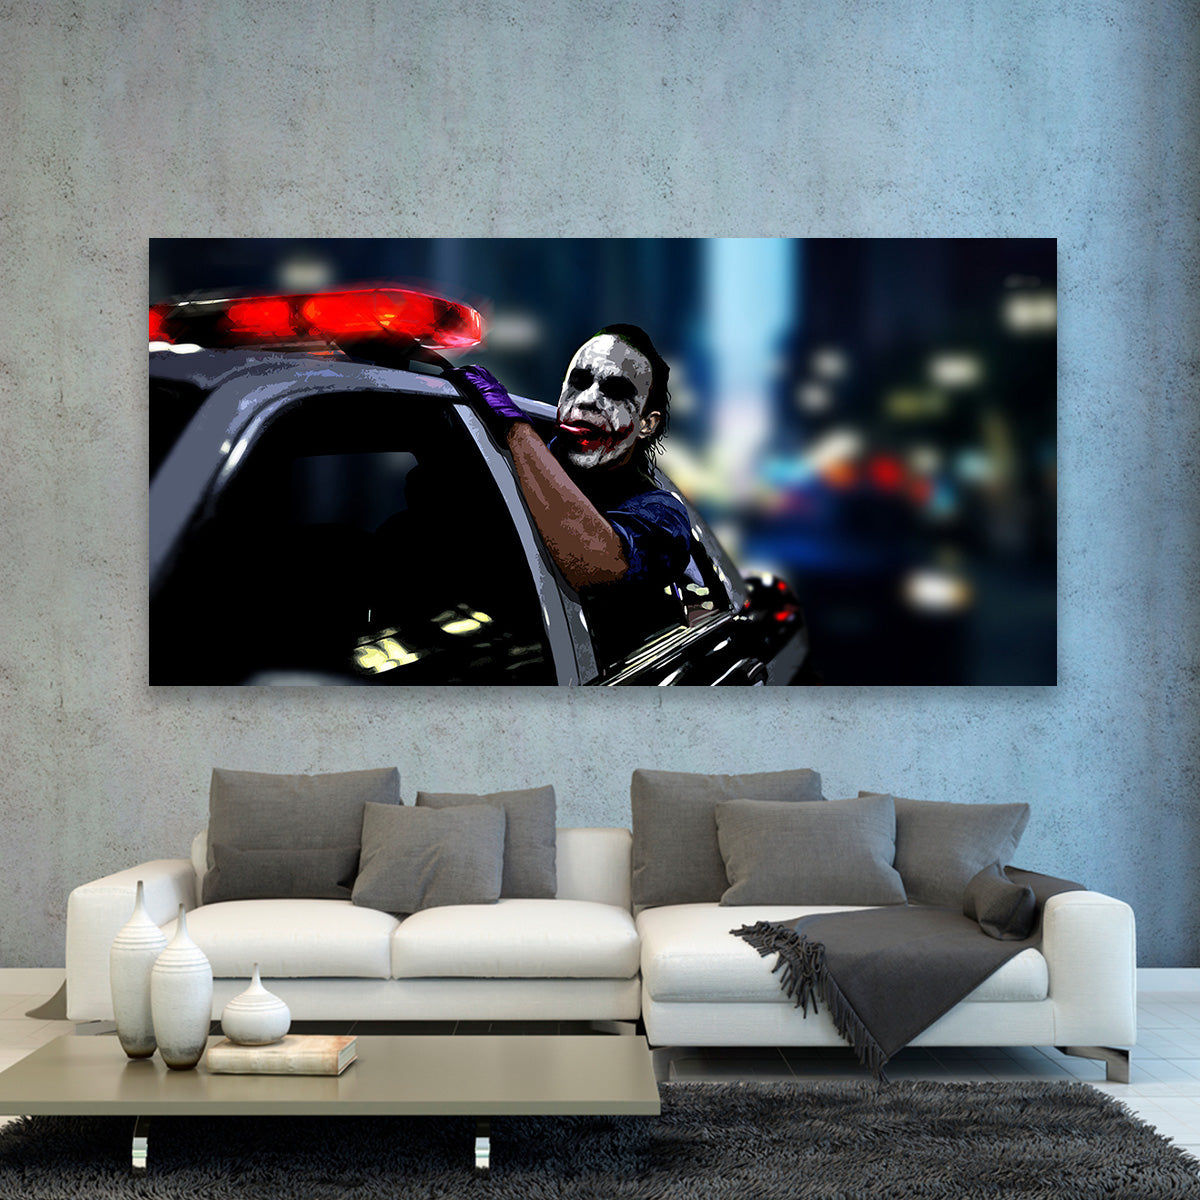 Canvas PRO - Canvas The Joker medida de 100x70 con marco flotante dorado en  acabado bicapa automotriz.